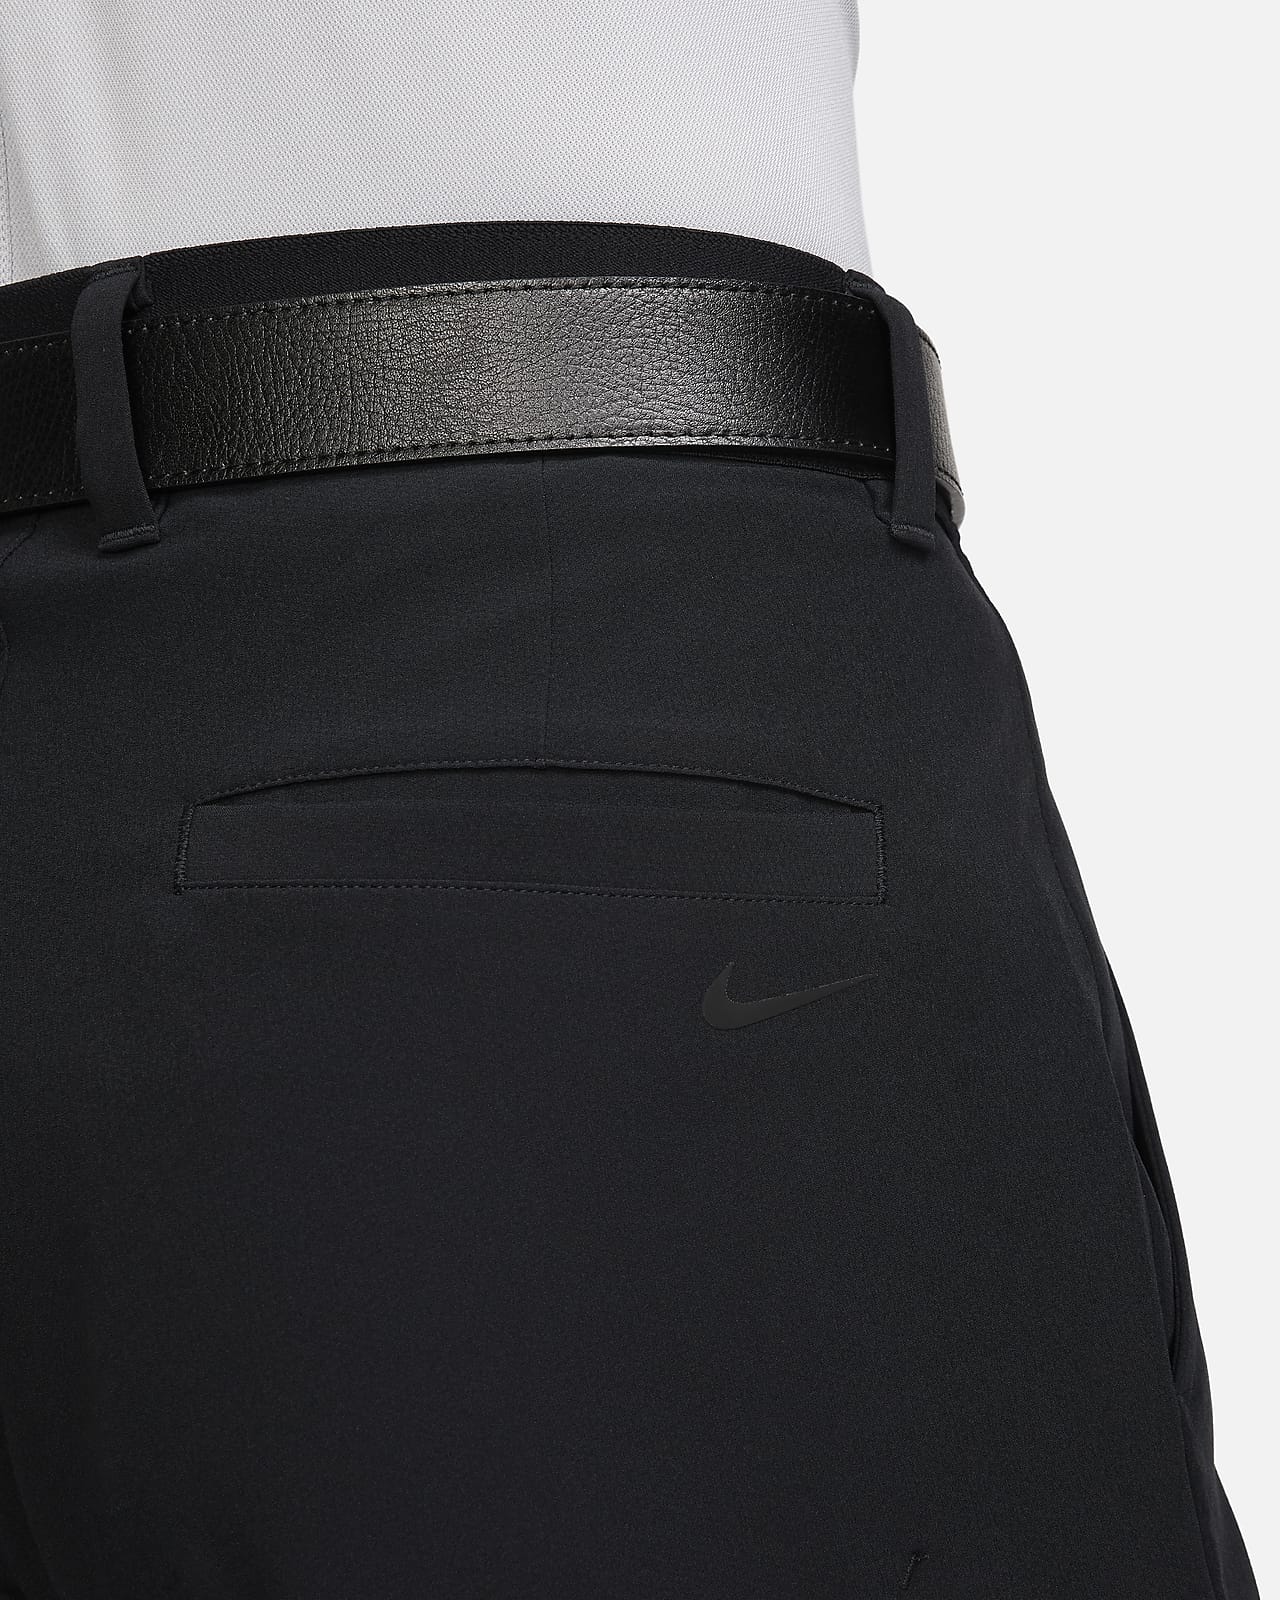 Nike Golf Flex Hybrid Woven Trousers Pants Black 921751-010 Men's 32x32